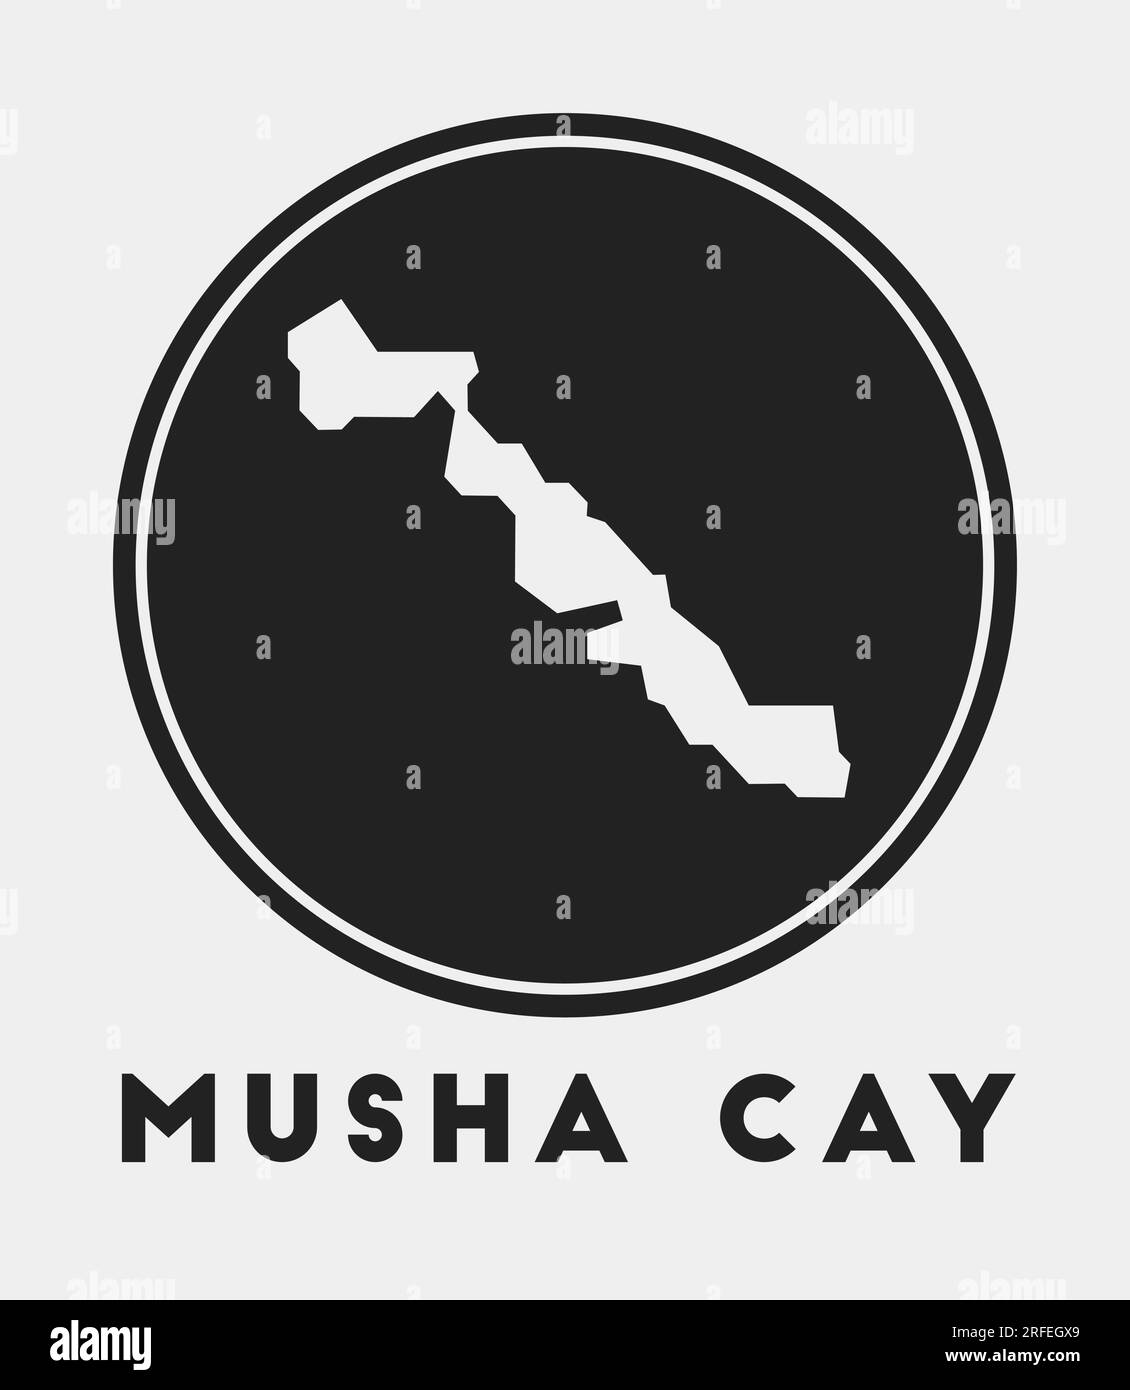 Musha Cay icon. Round logo with island map and title. Stylish Musha Cay ...